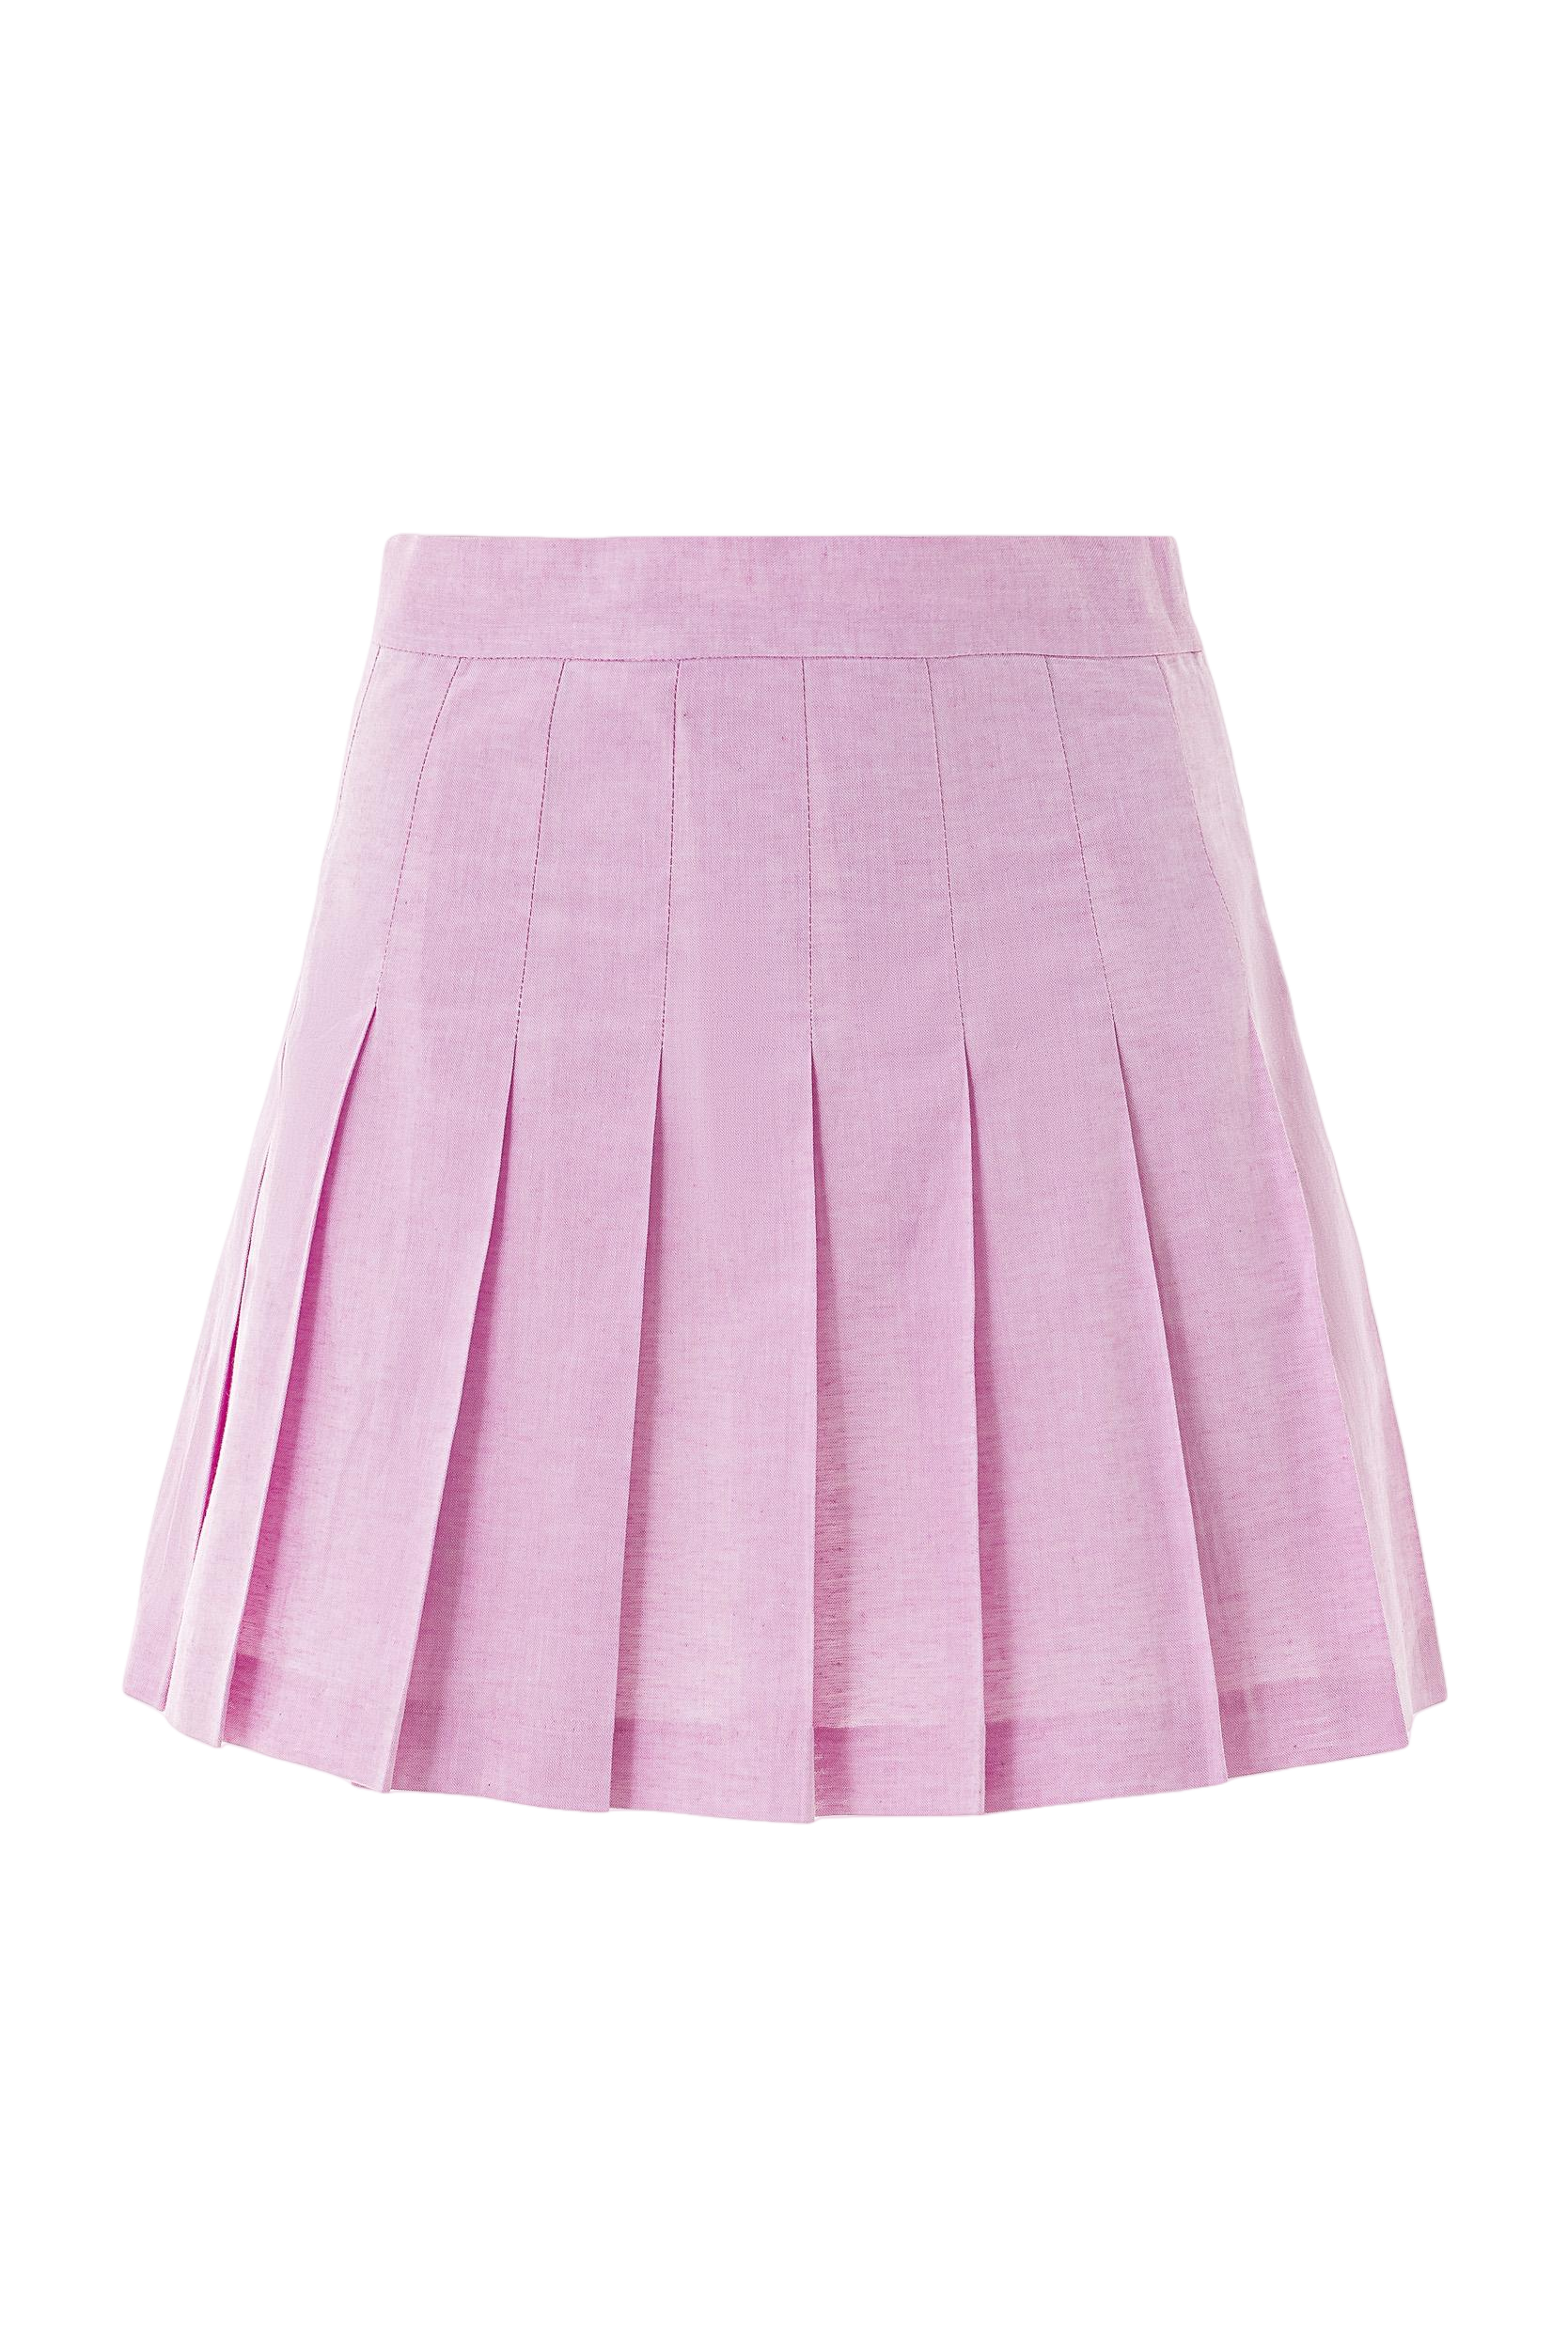 Linen blend tennis skirt in pink von Lita Couture